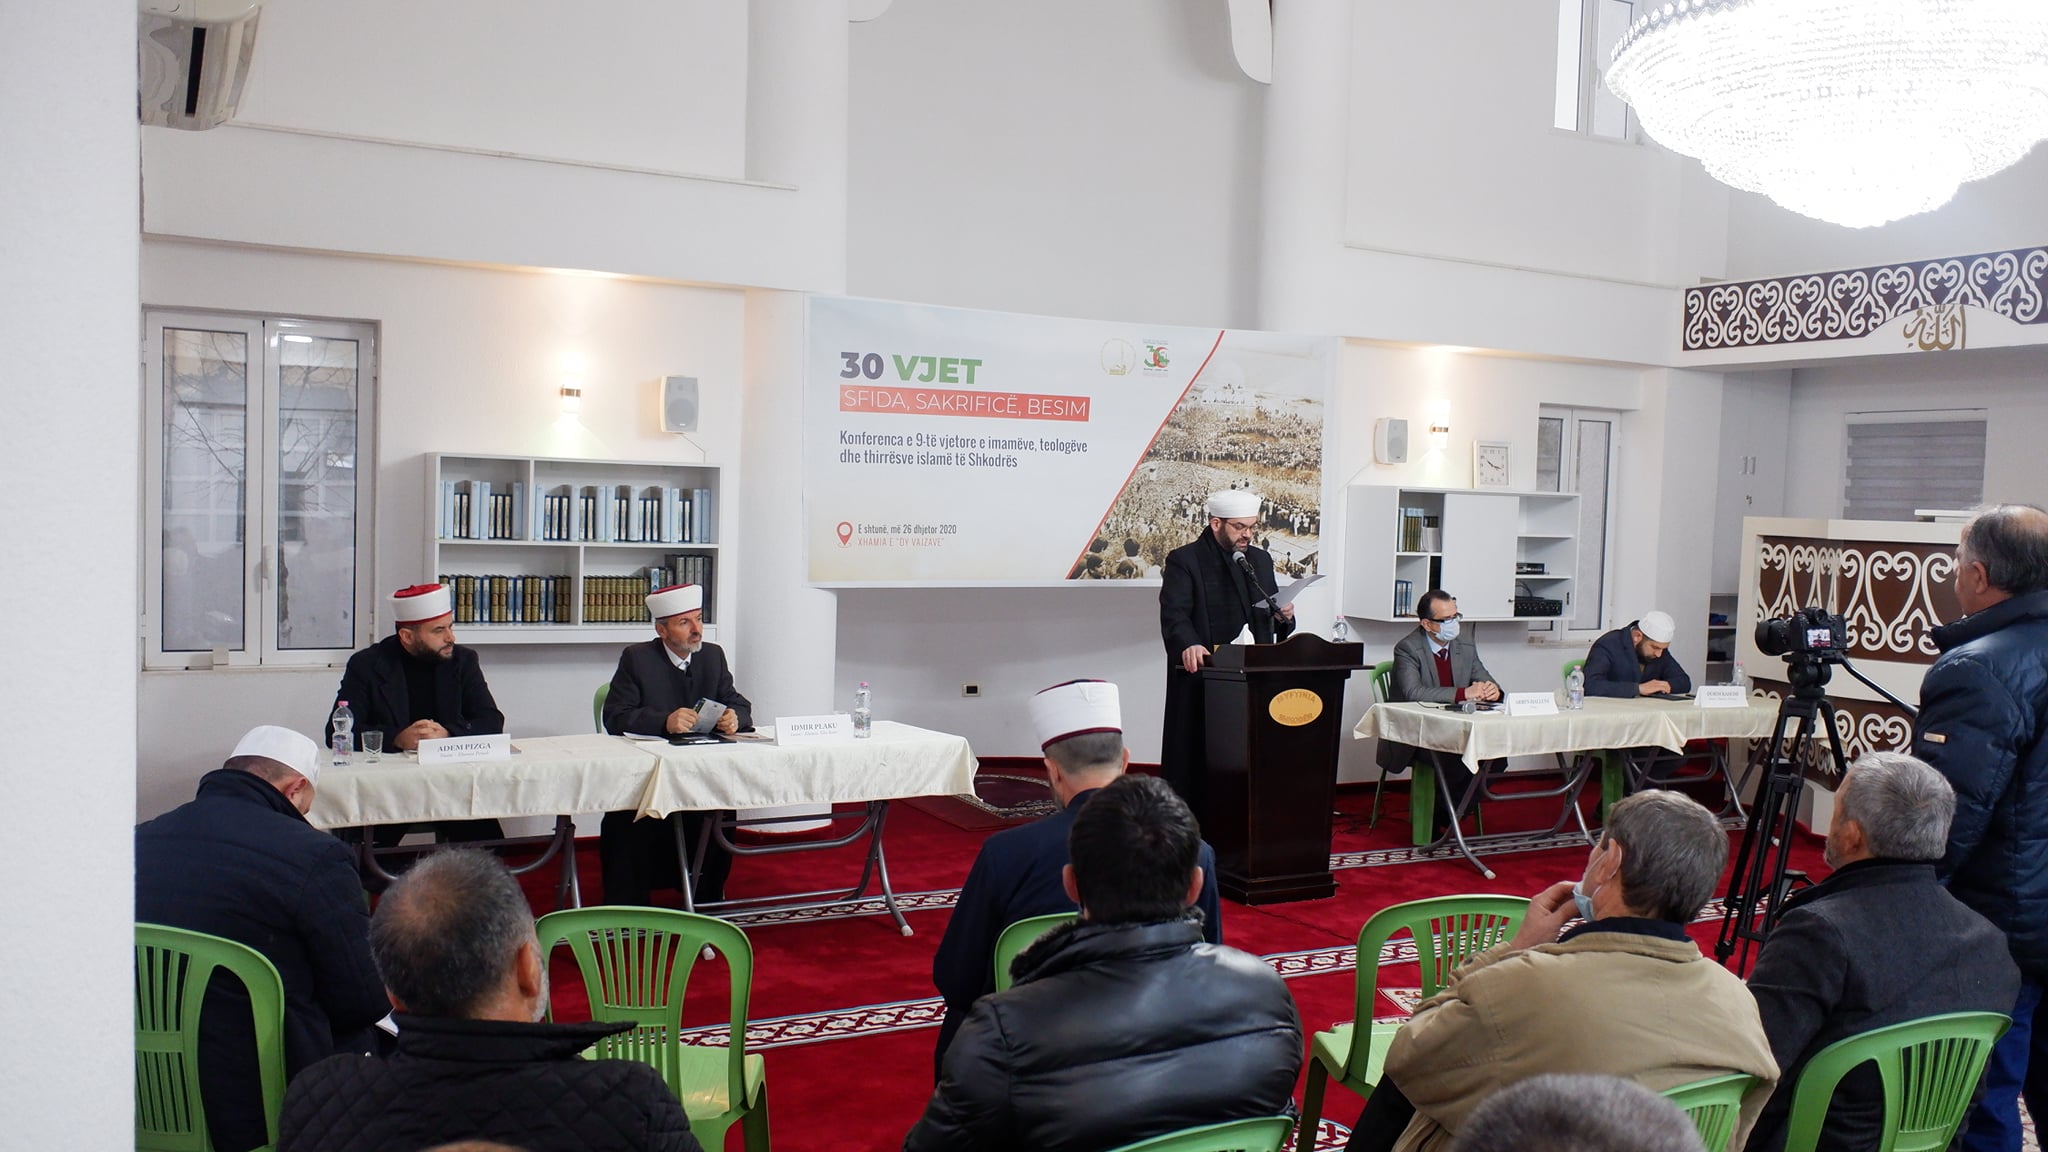 U zhvillua konferenca e 9-të vjetore e imamëve me temë: “30 vjet Sfida, Sakrificë, Besim”